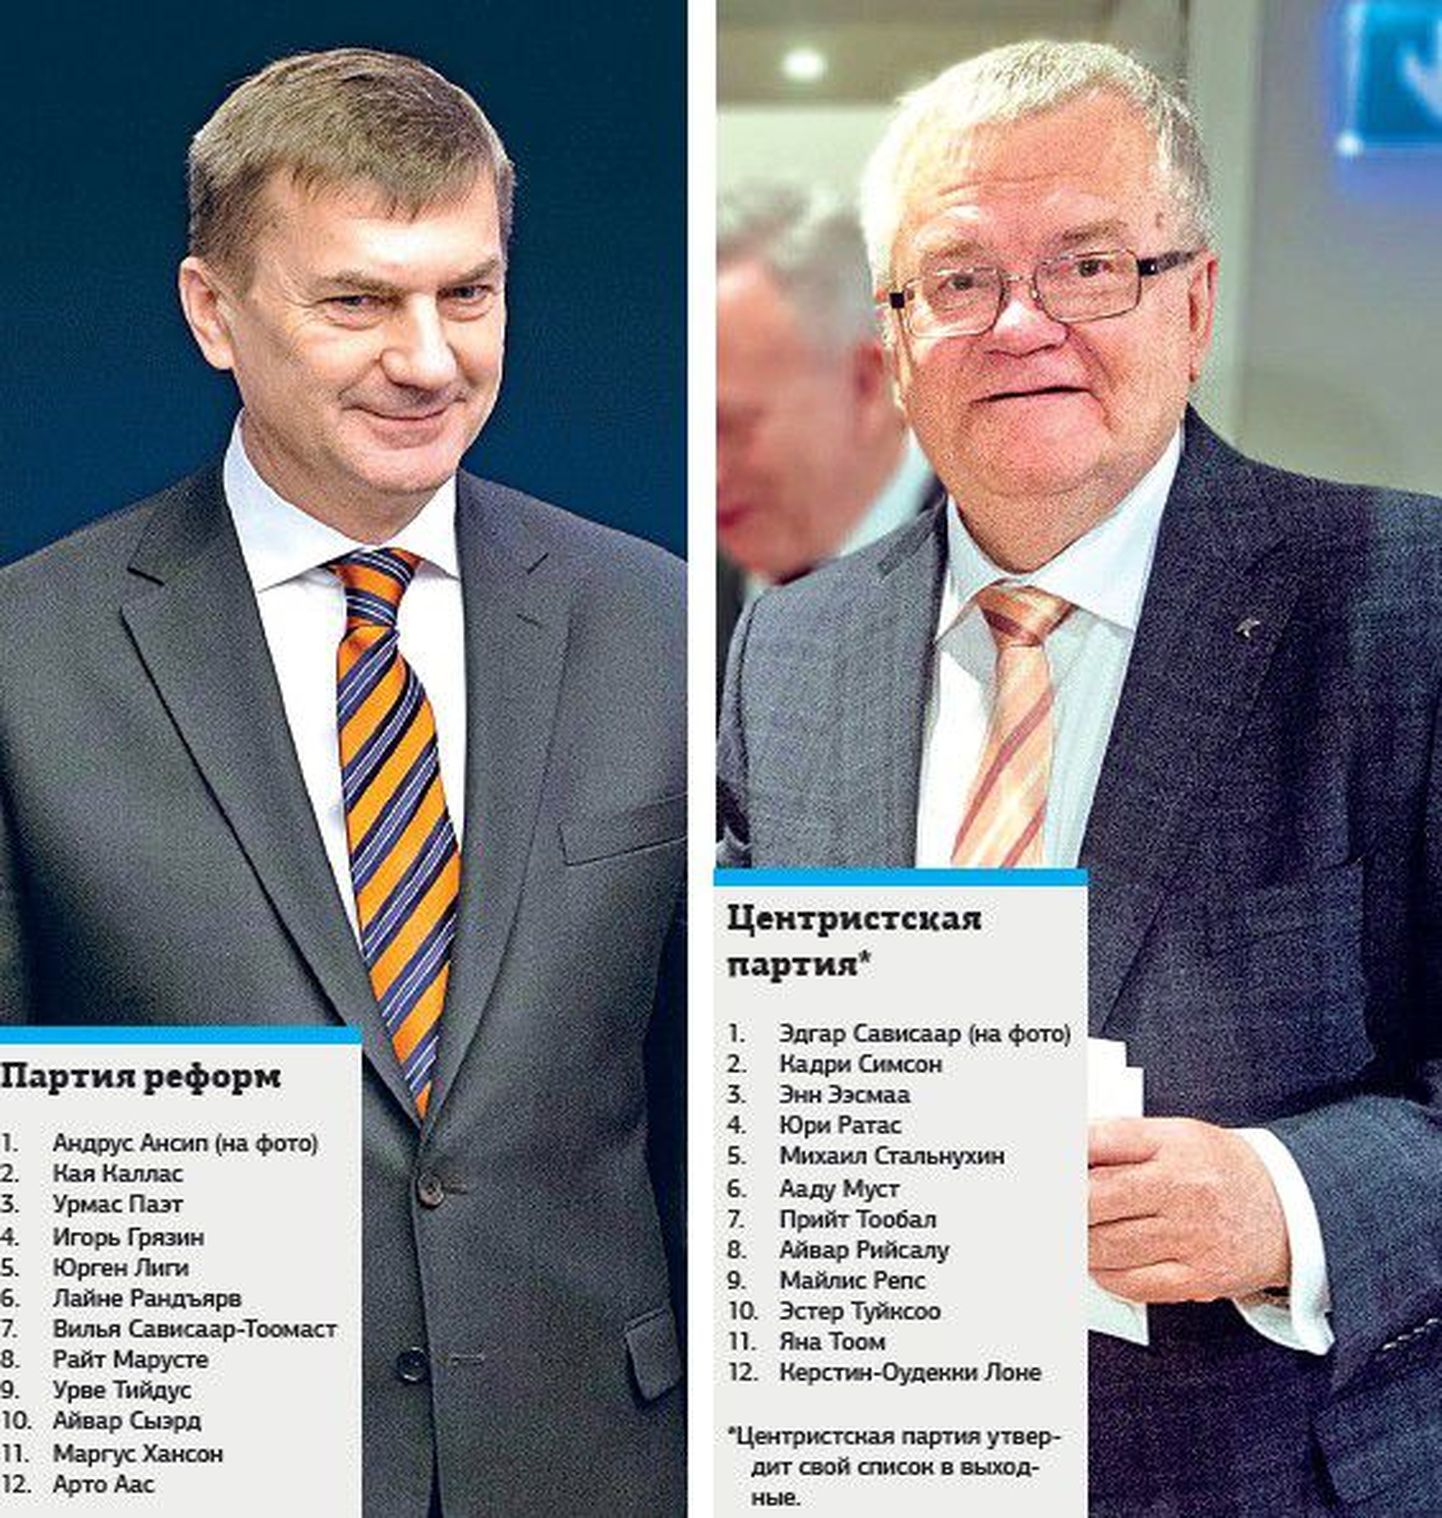 Все представленные в Рийгикогу партии выдвинули в качестве первых номеров своих списков на выборах в Европейский парламент опытных политиков.